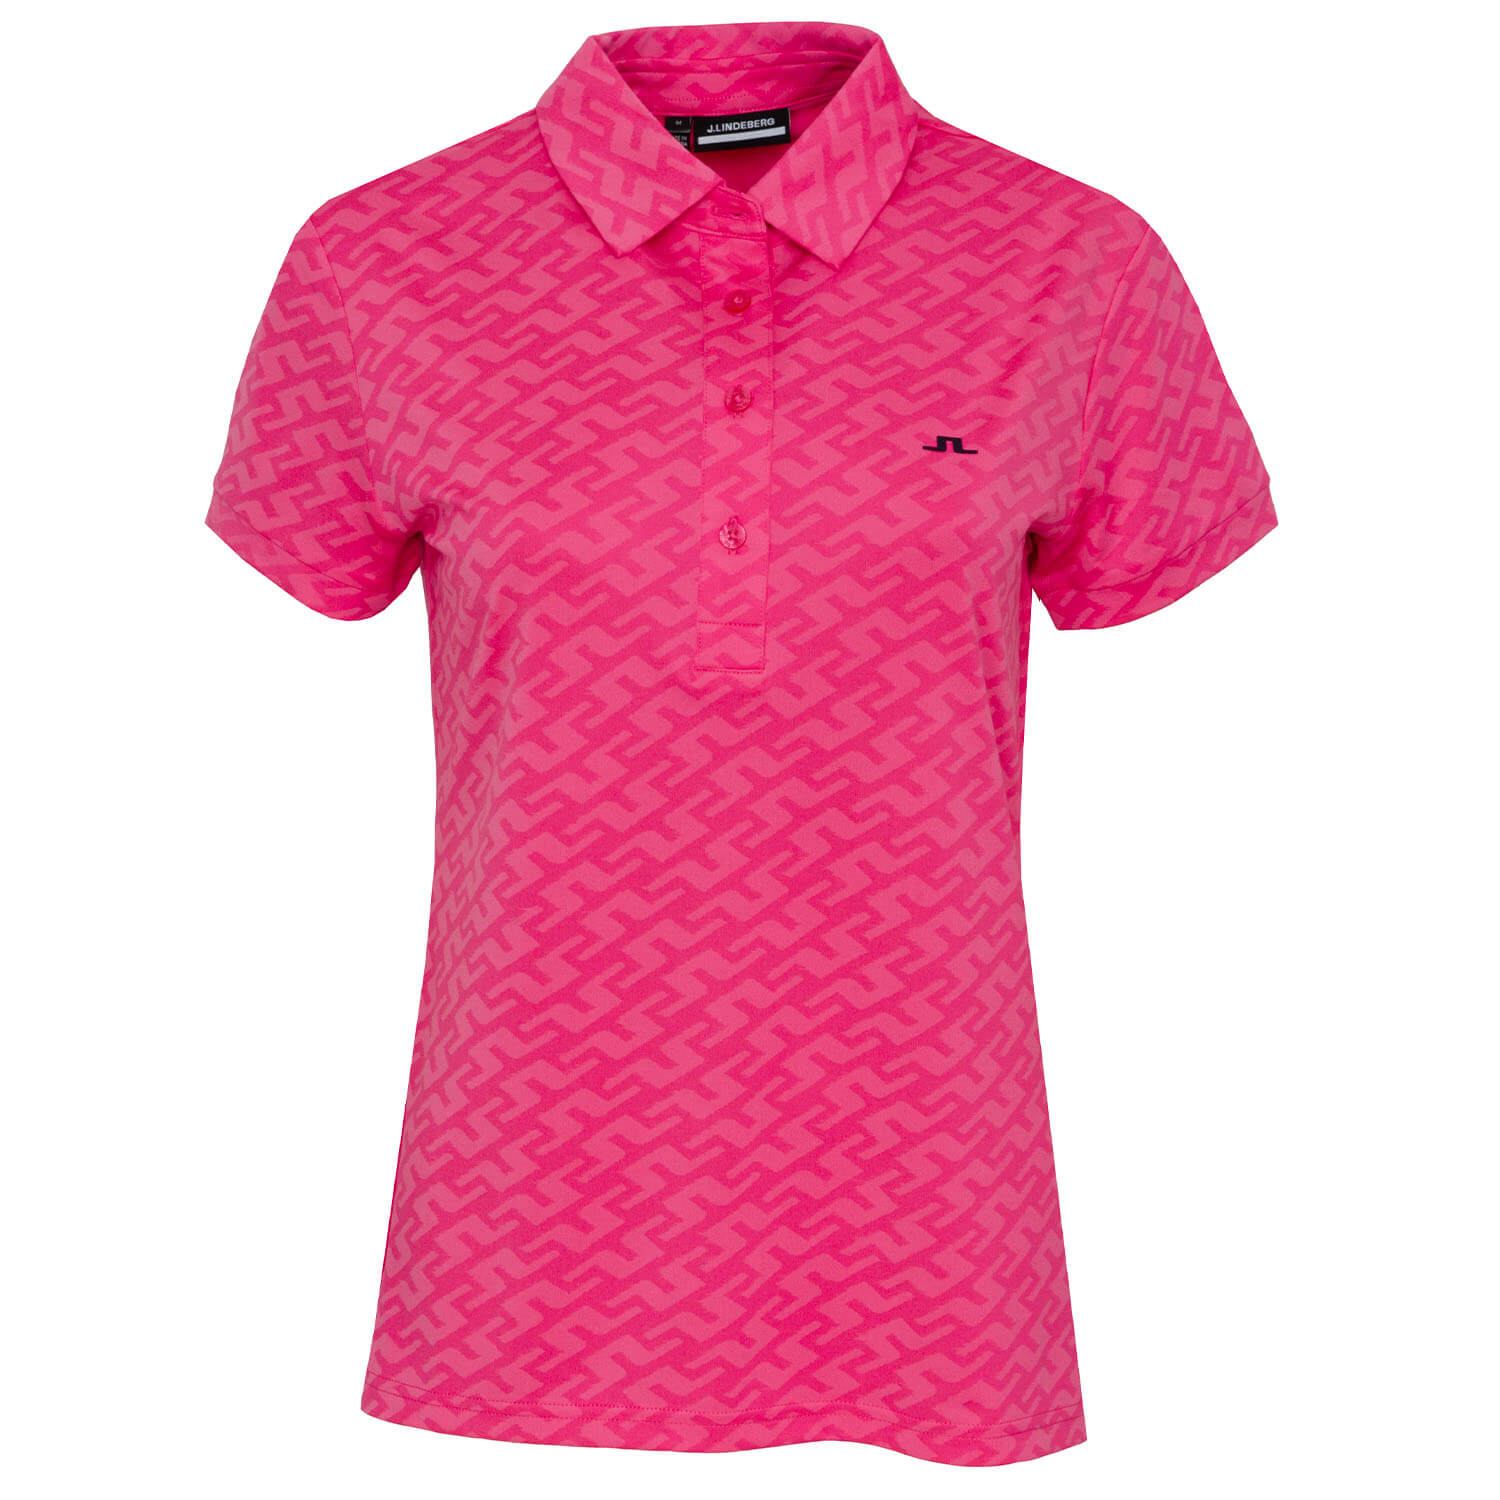 J Lindeberg Alaya Jacquard Ladies Golf Polo Shirt